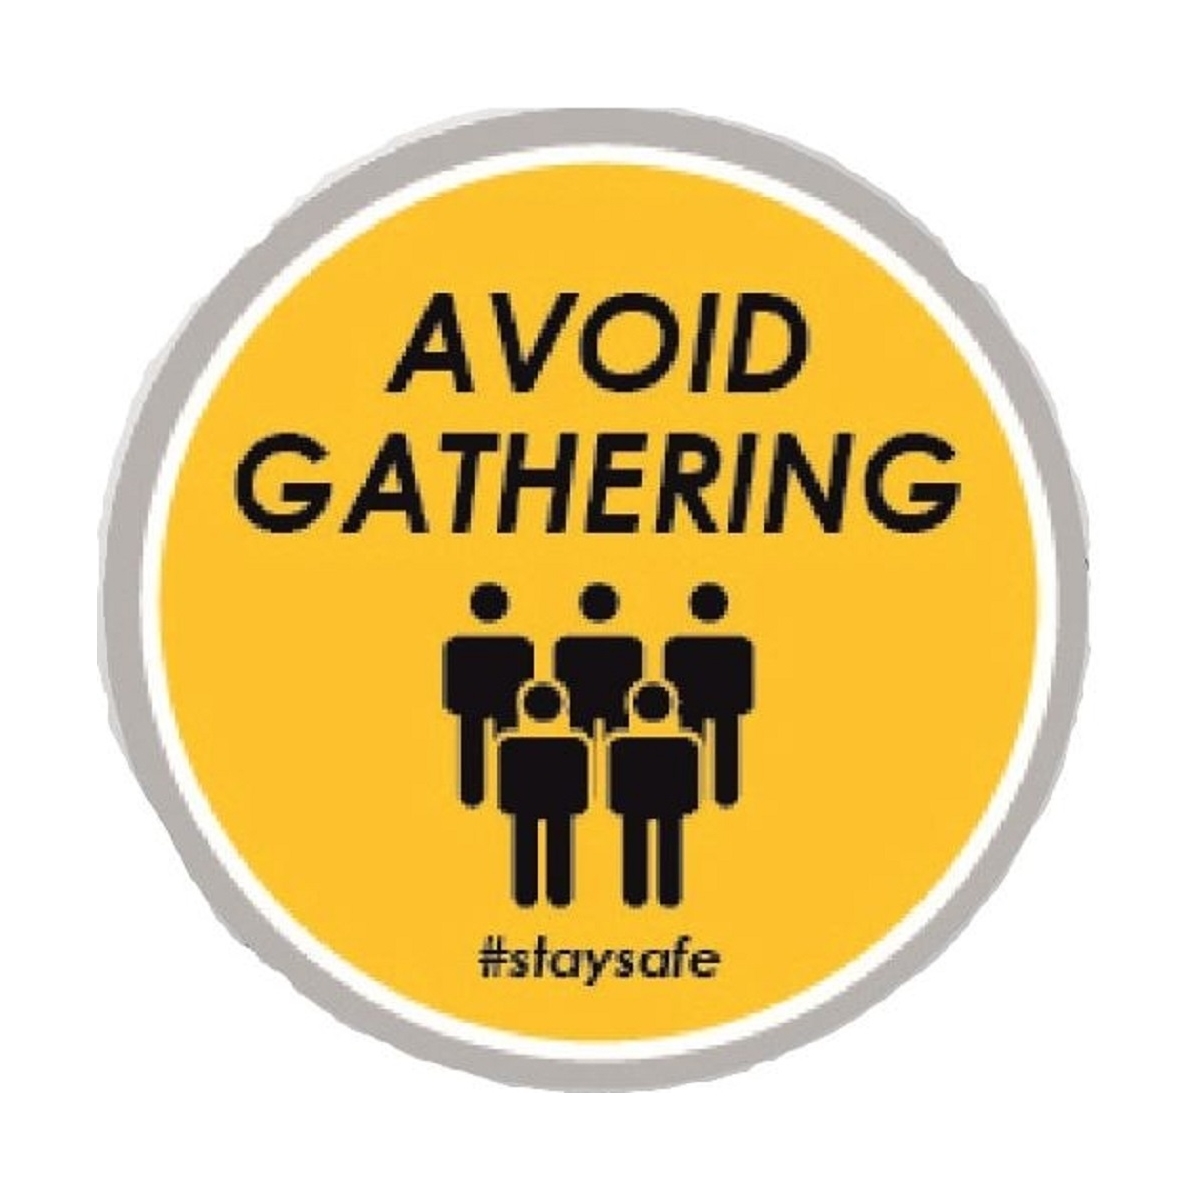 Avoid gathering